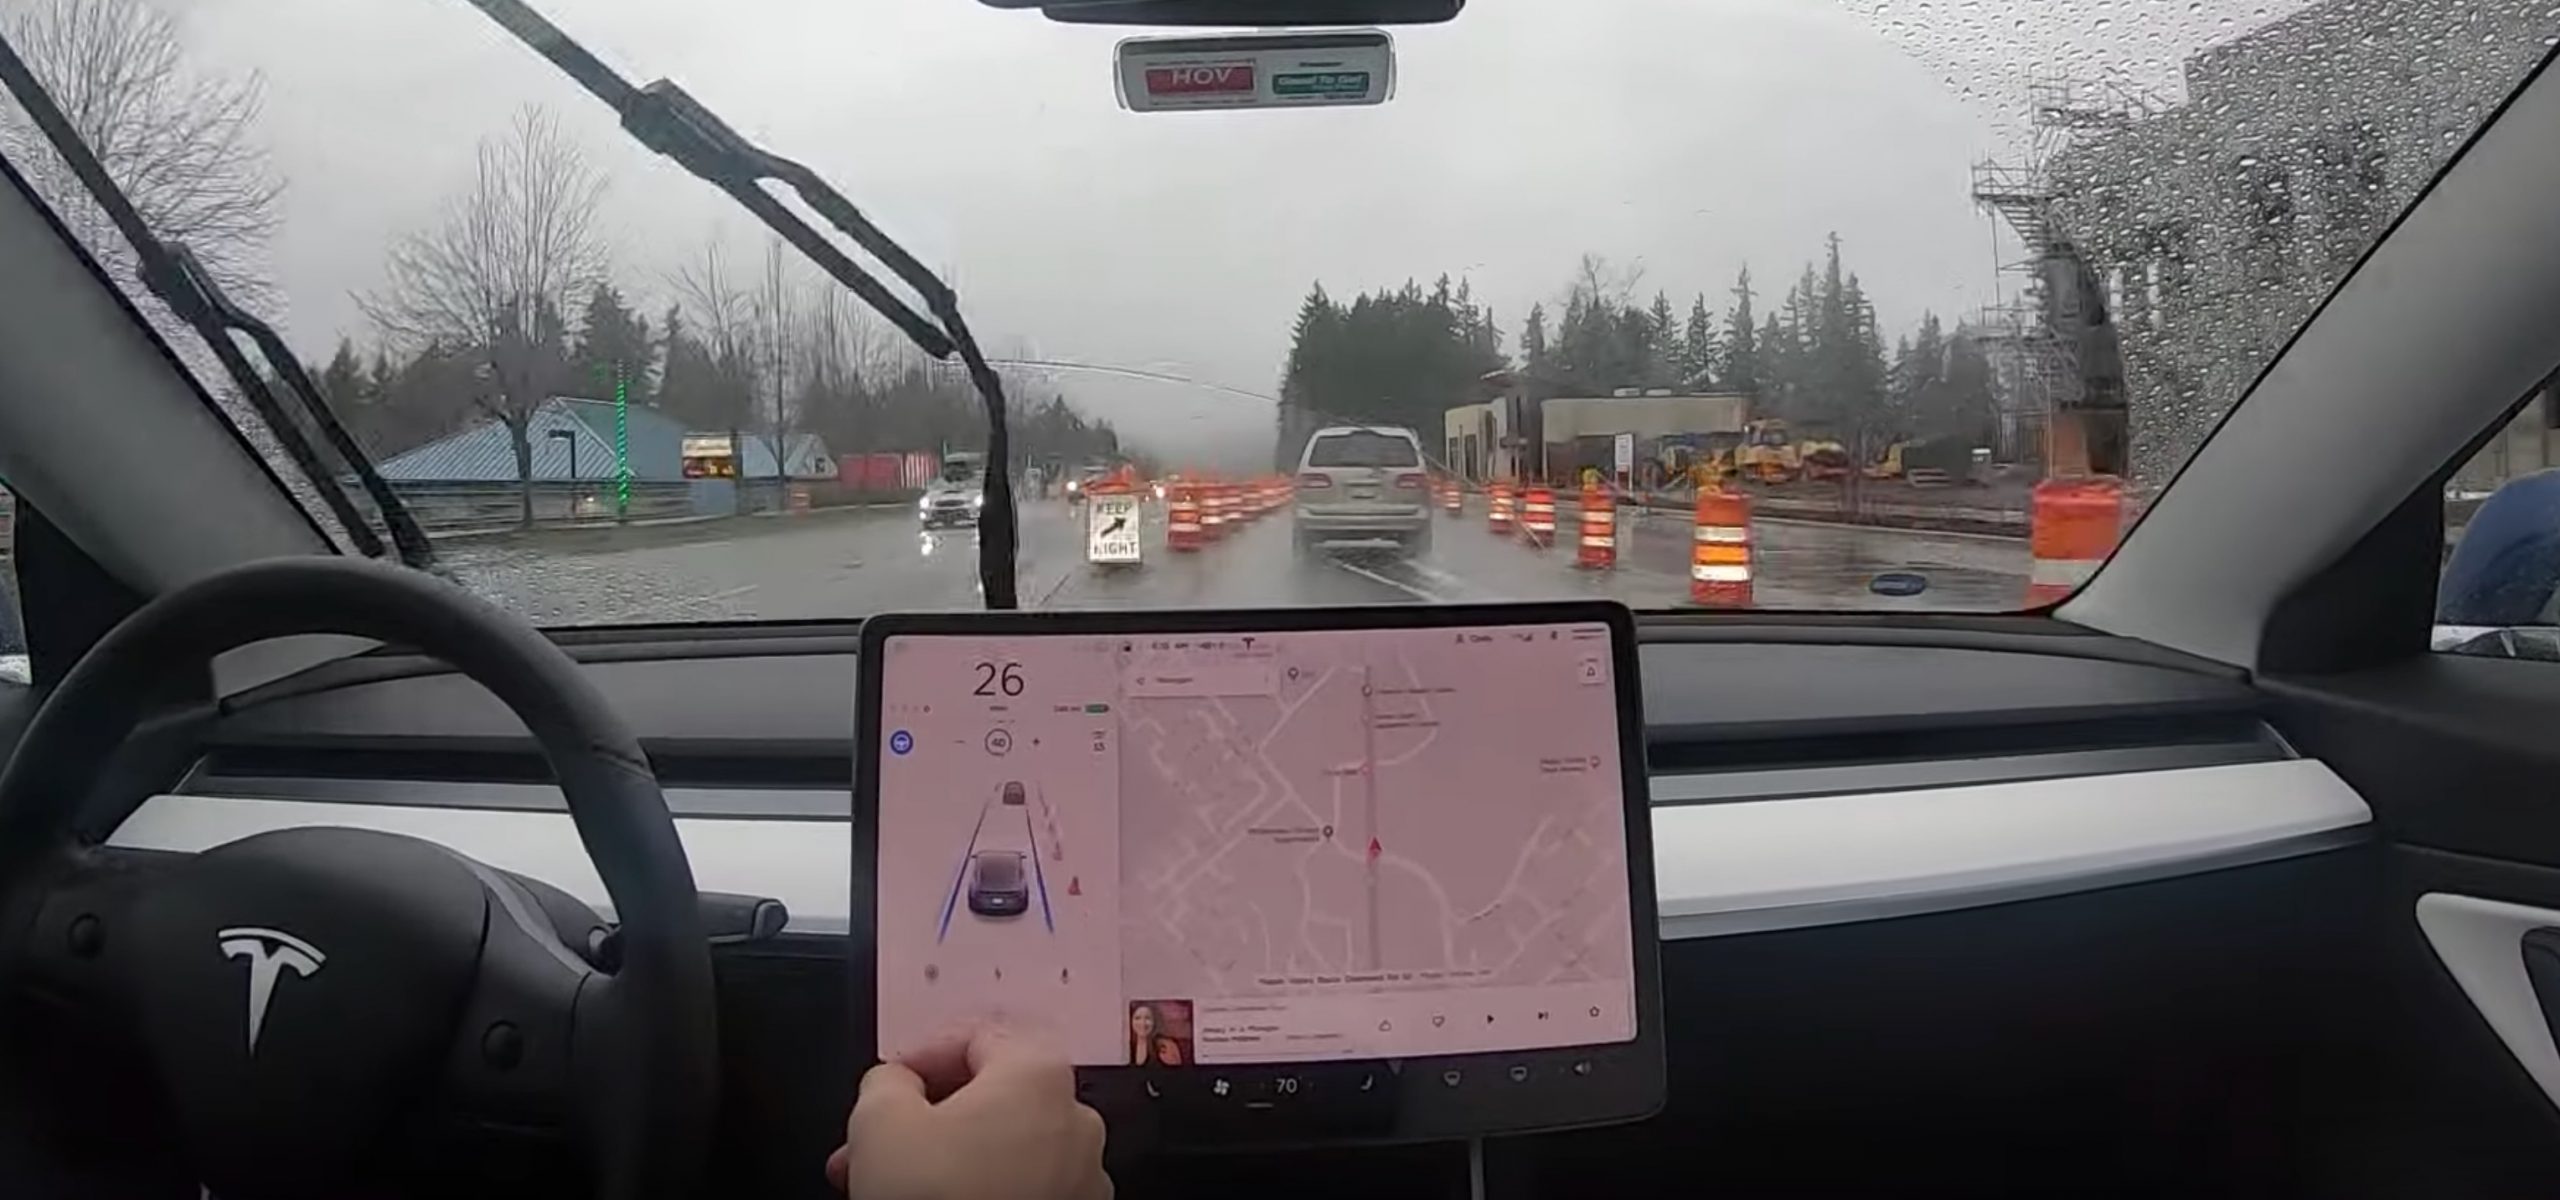 Tesla Autopilot construction zone lane